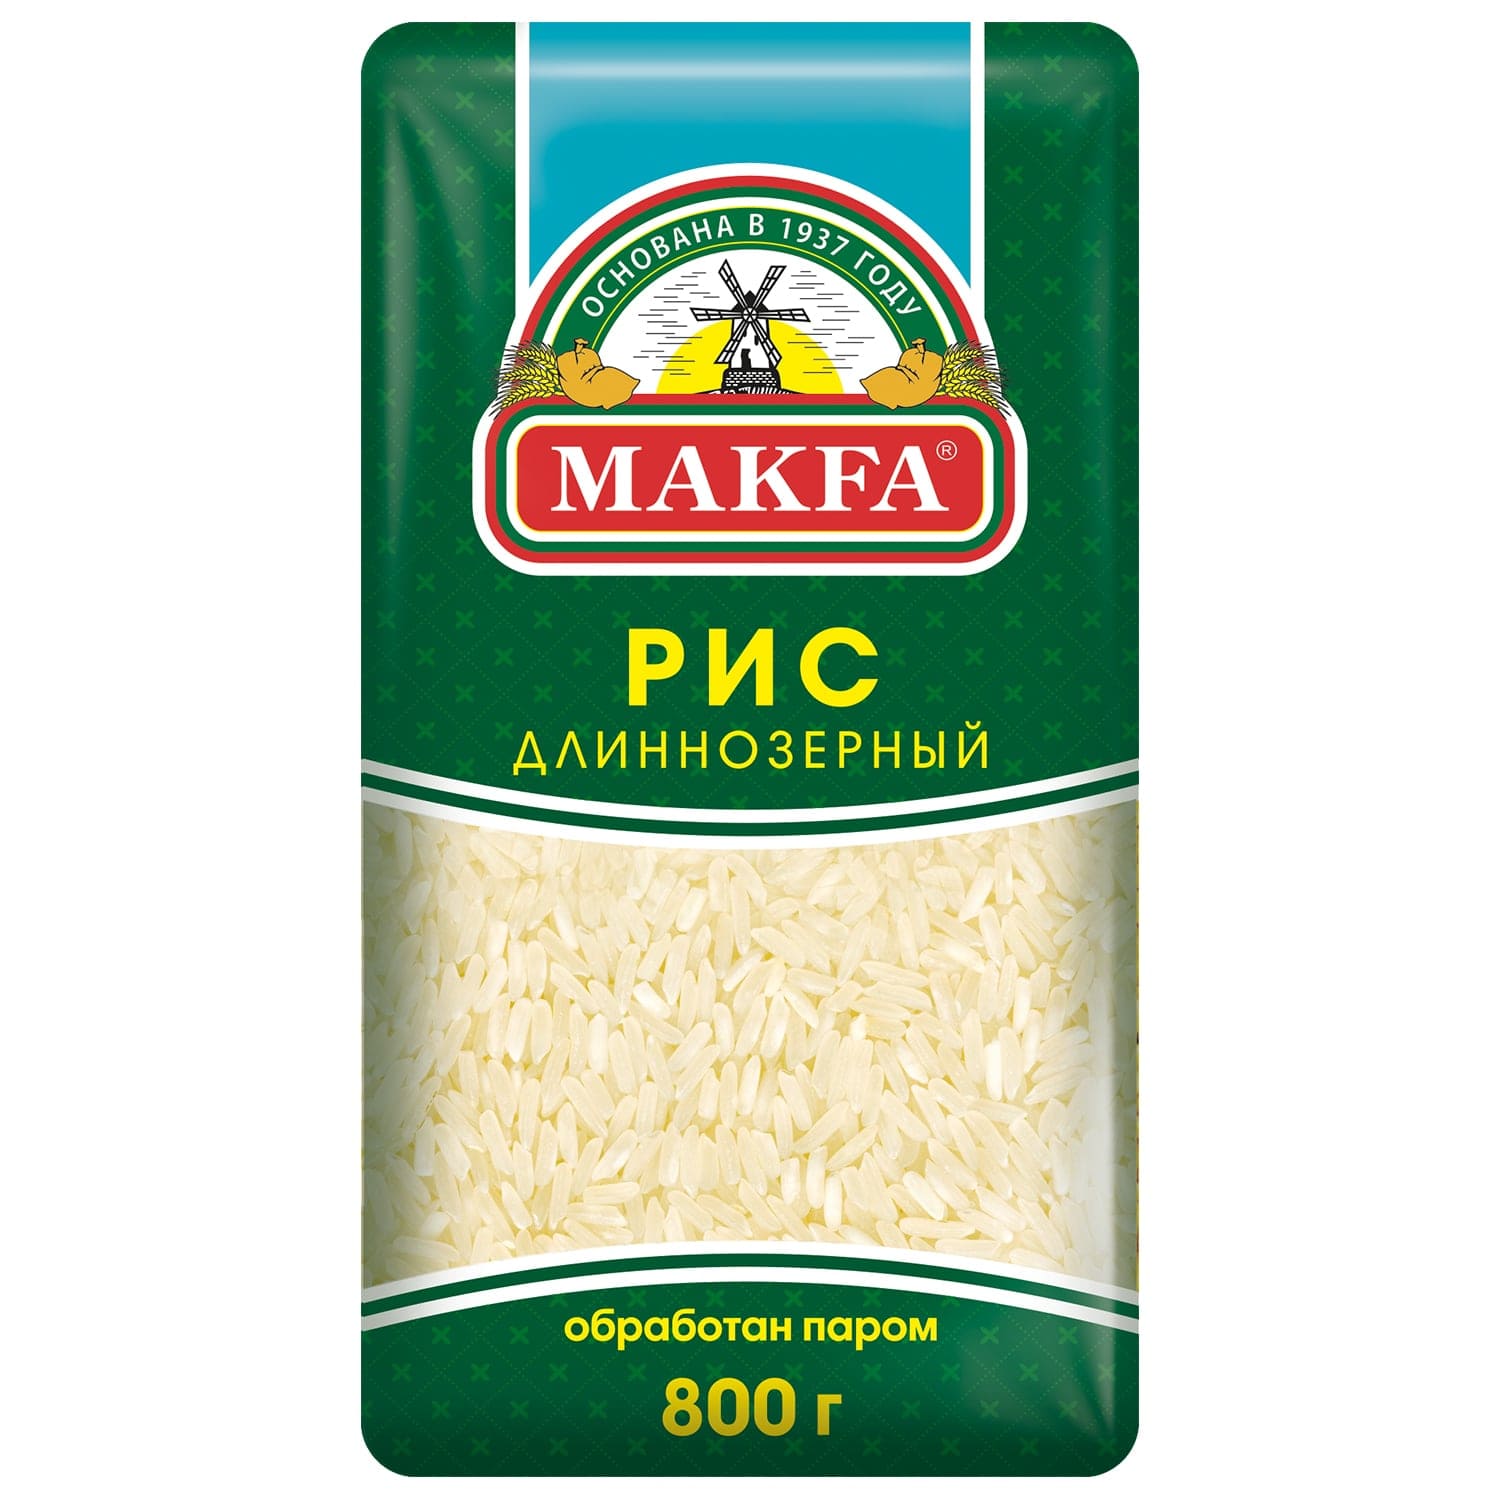 Рис длиннозерный MAKFA обработан паром 800 г